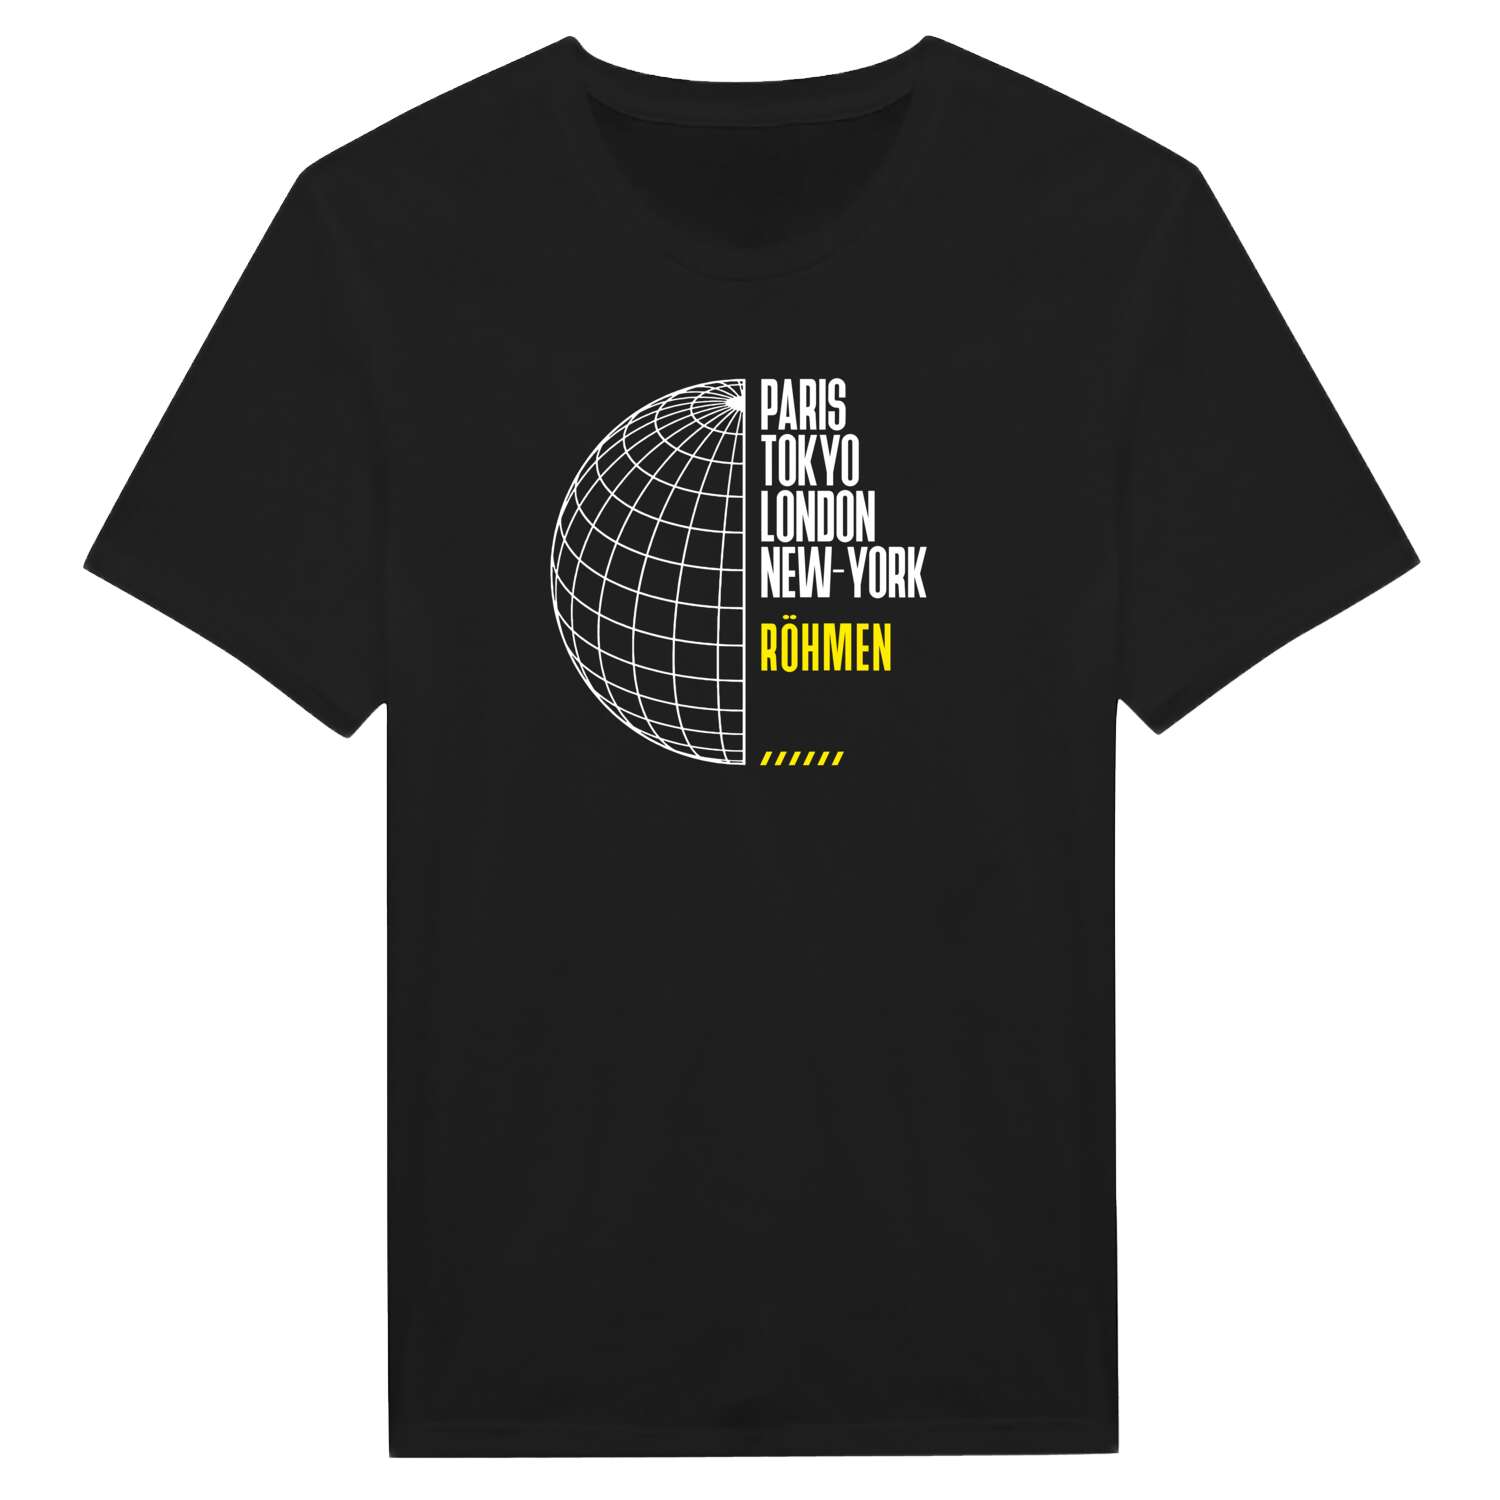 Röhmen T-Shirt »Paris Tokyo London«